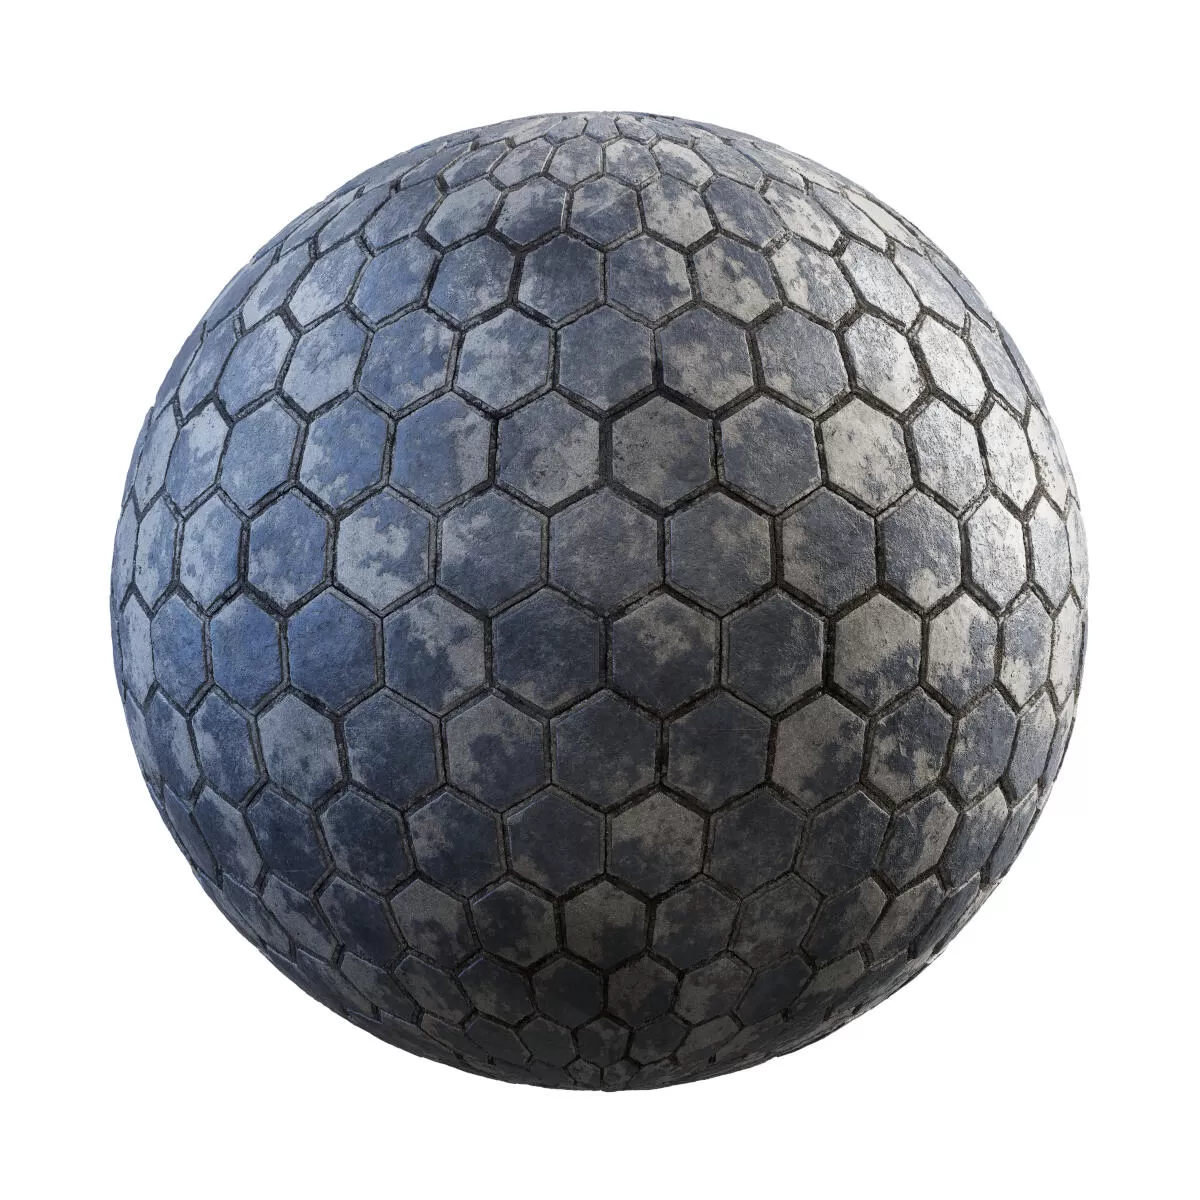 PBR Textures Volume 34 – Pavements – 4K – painted_hexagon_concrete_pavement_36_99